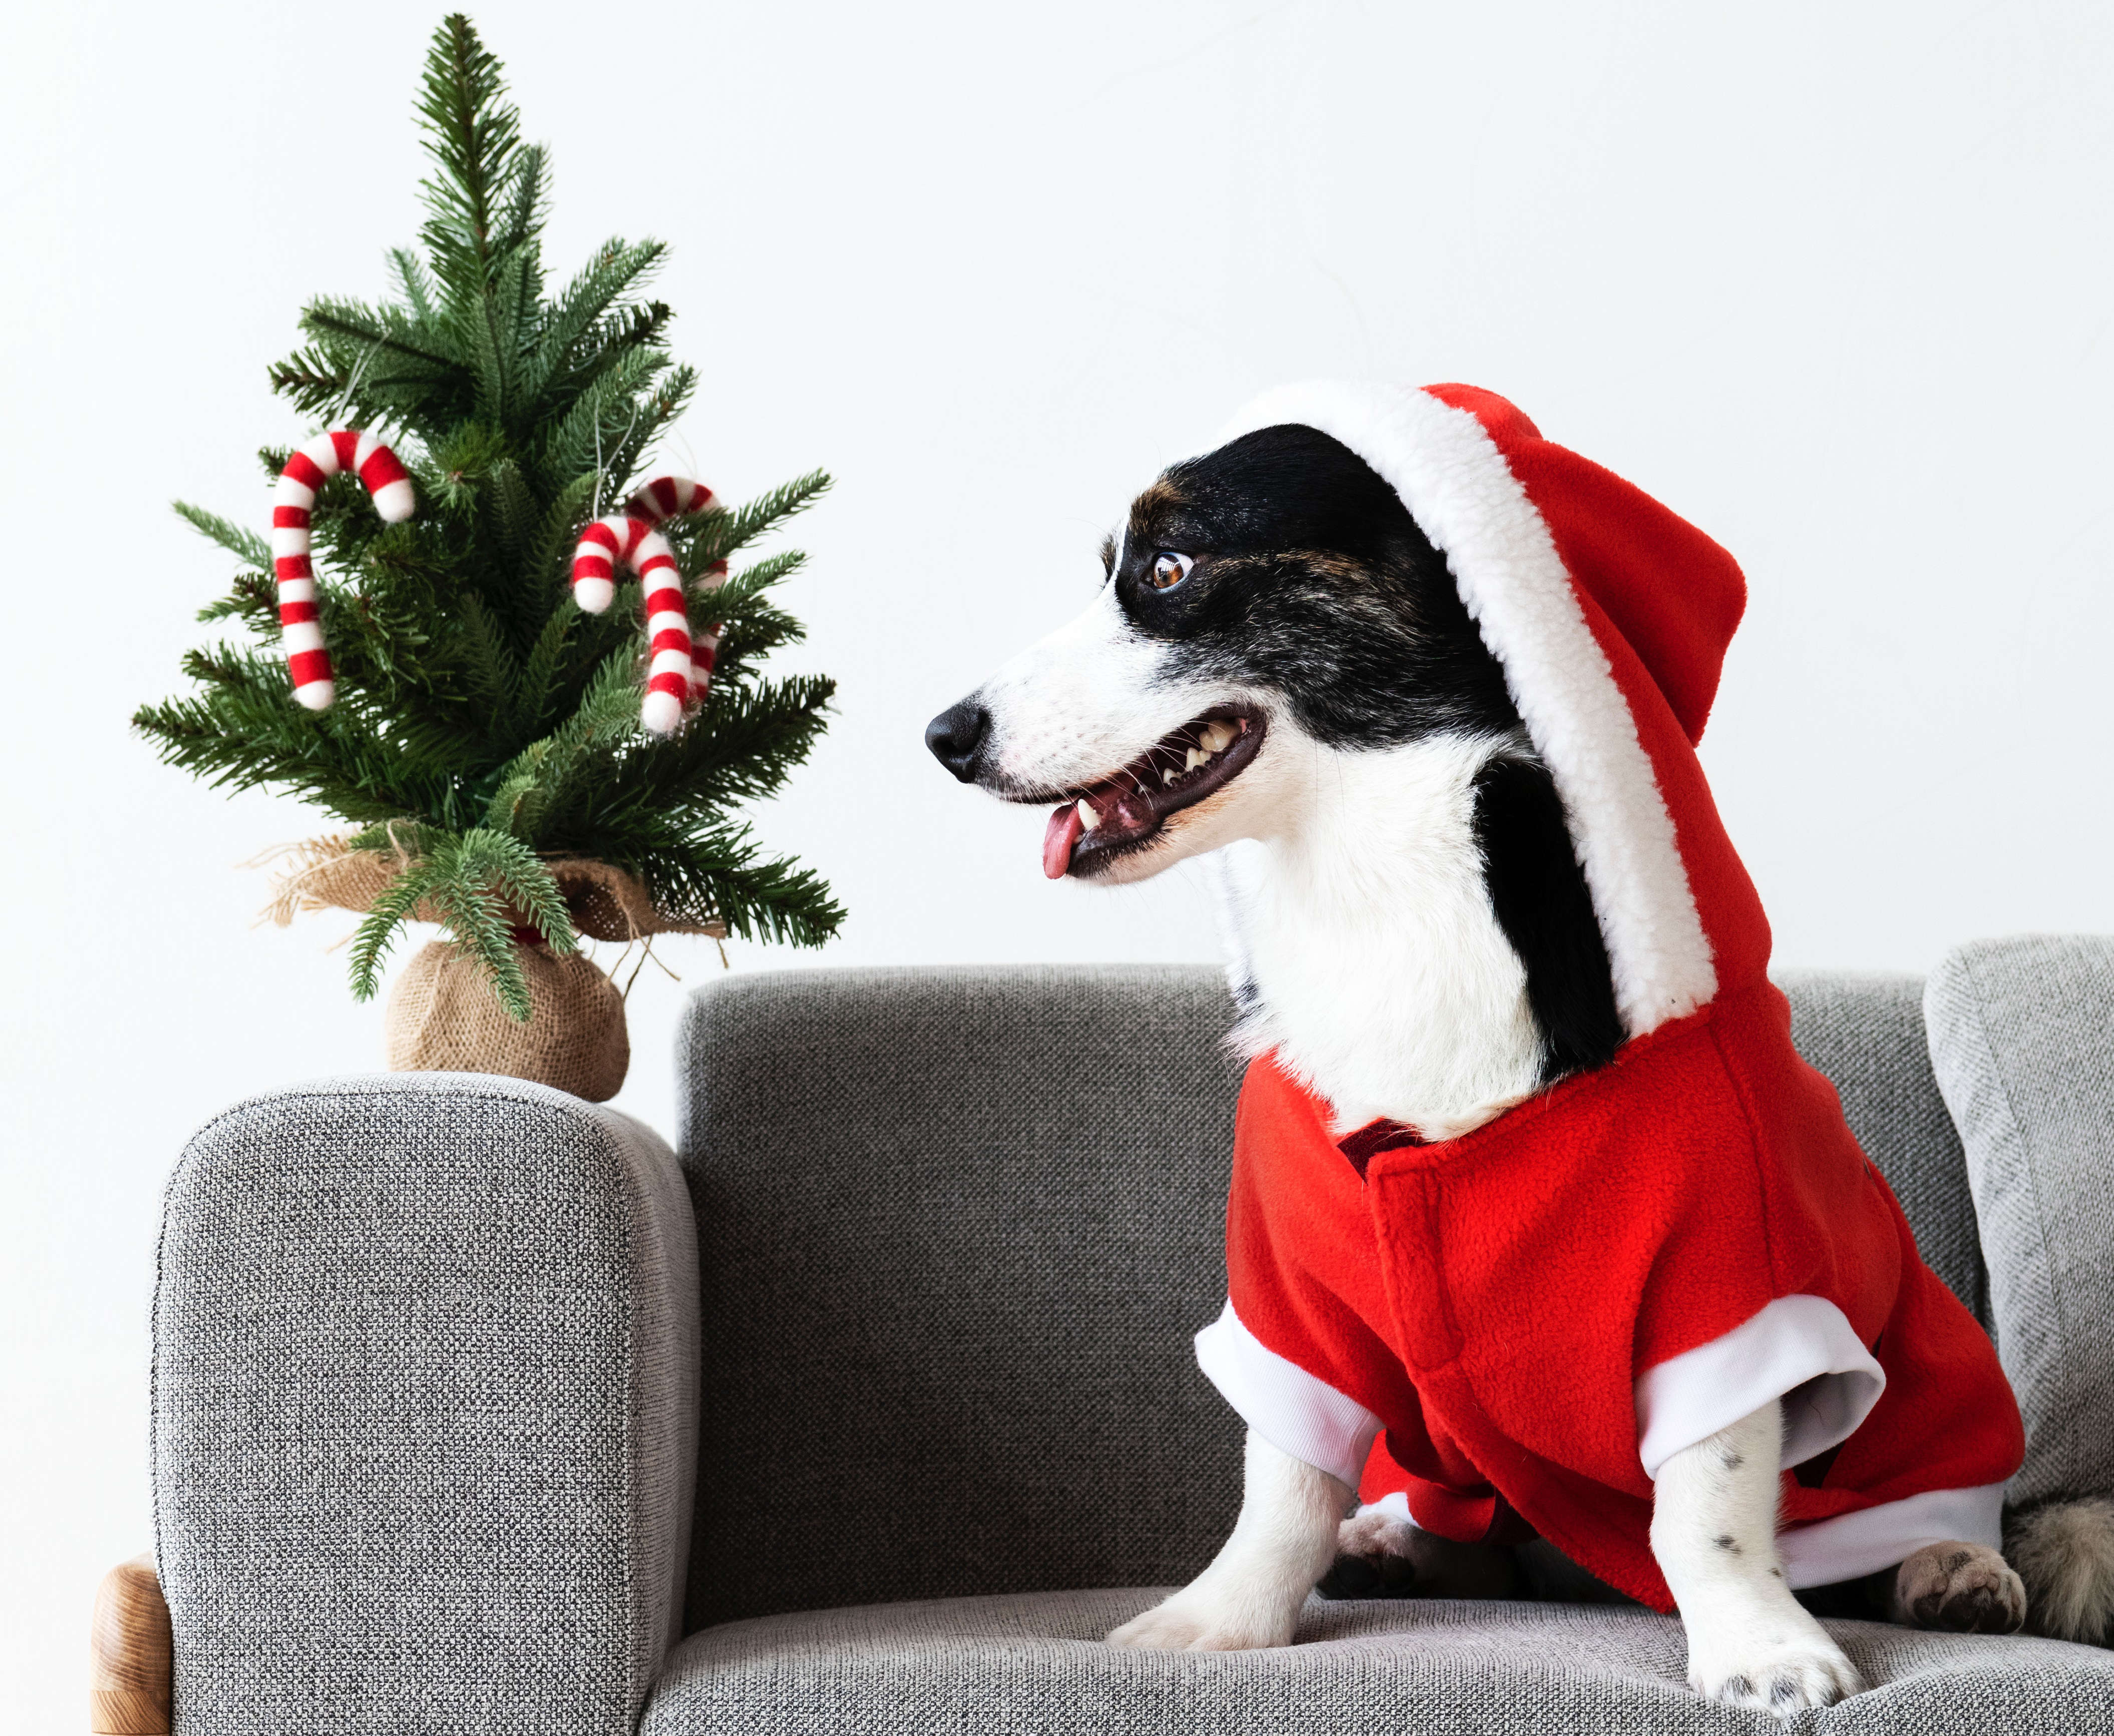 Weihnachten mit Hund (Teil 2) Weihnachtsleckereien, Deko und andere